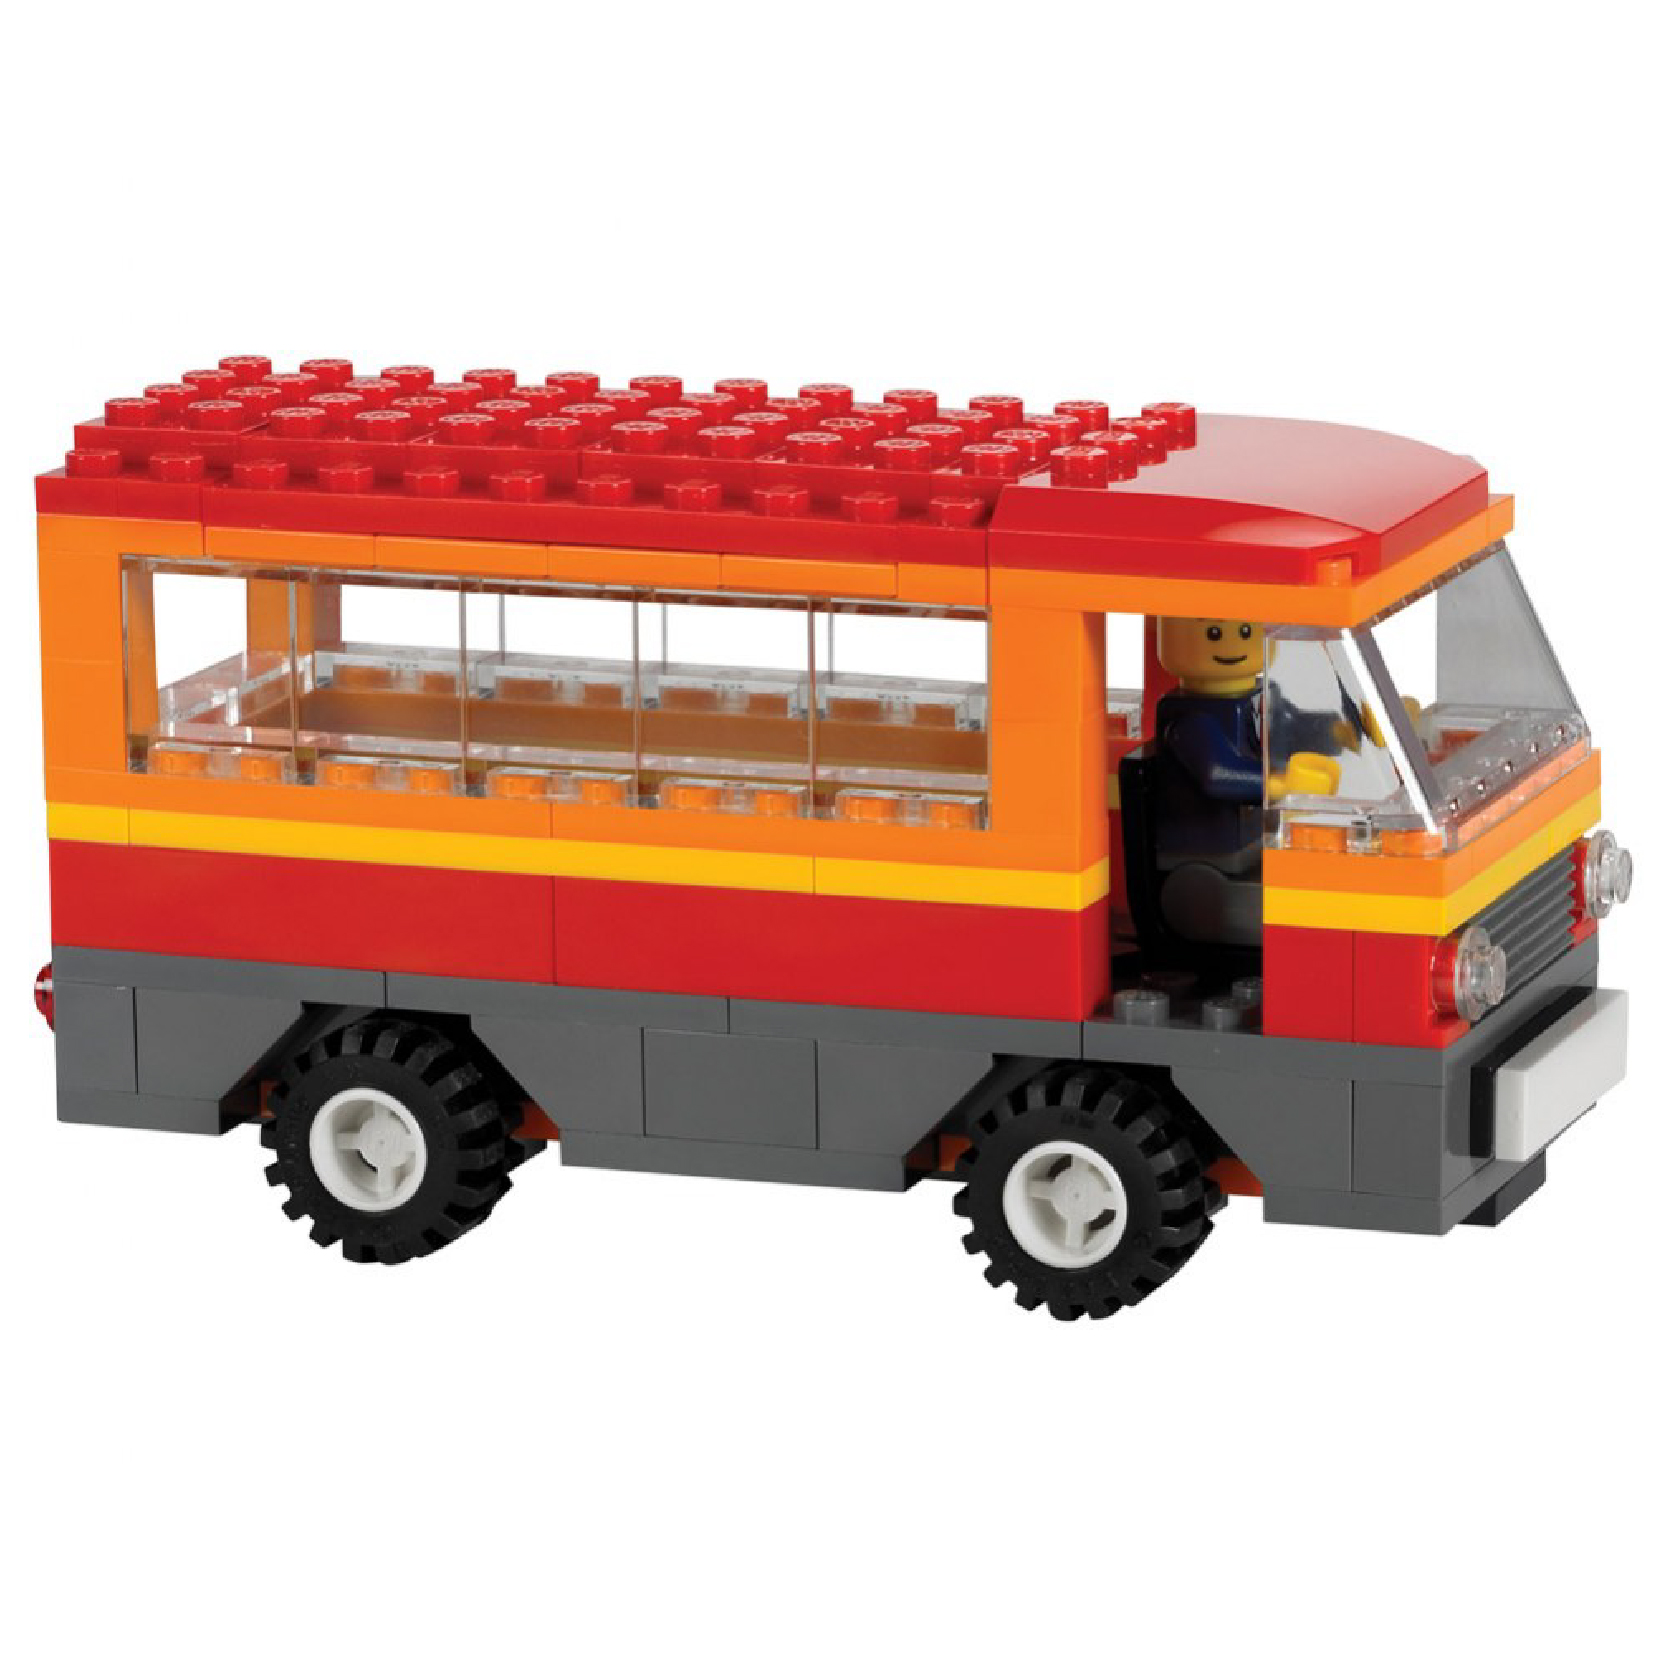 Đồ Chơi LEGO EDUCATION Chủ Đề Giao Thông - Phương Tiện Giao Thông 9333